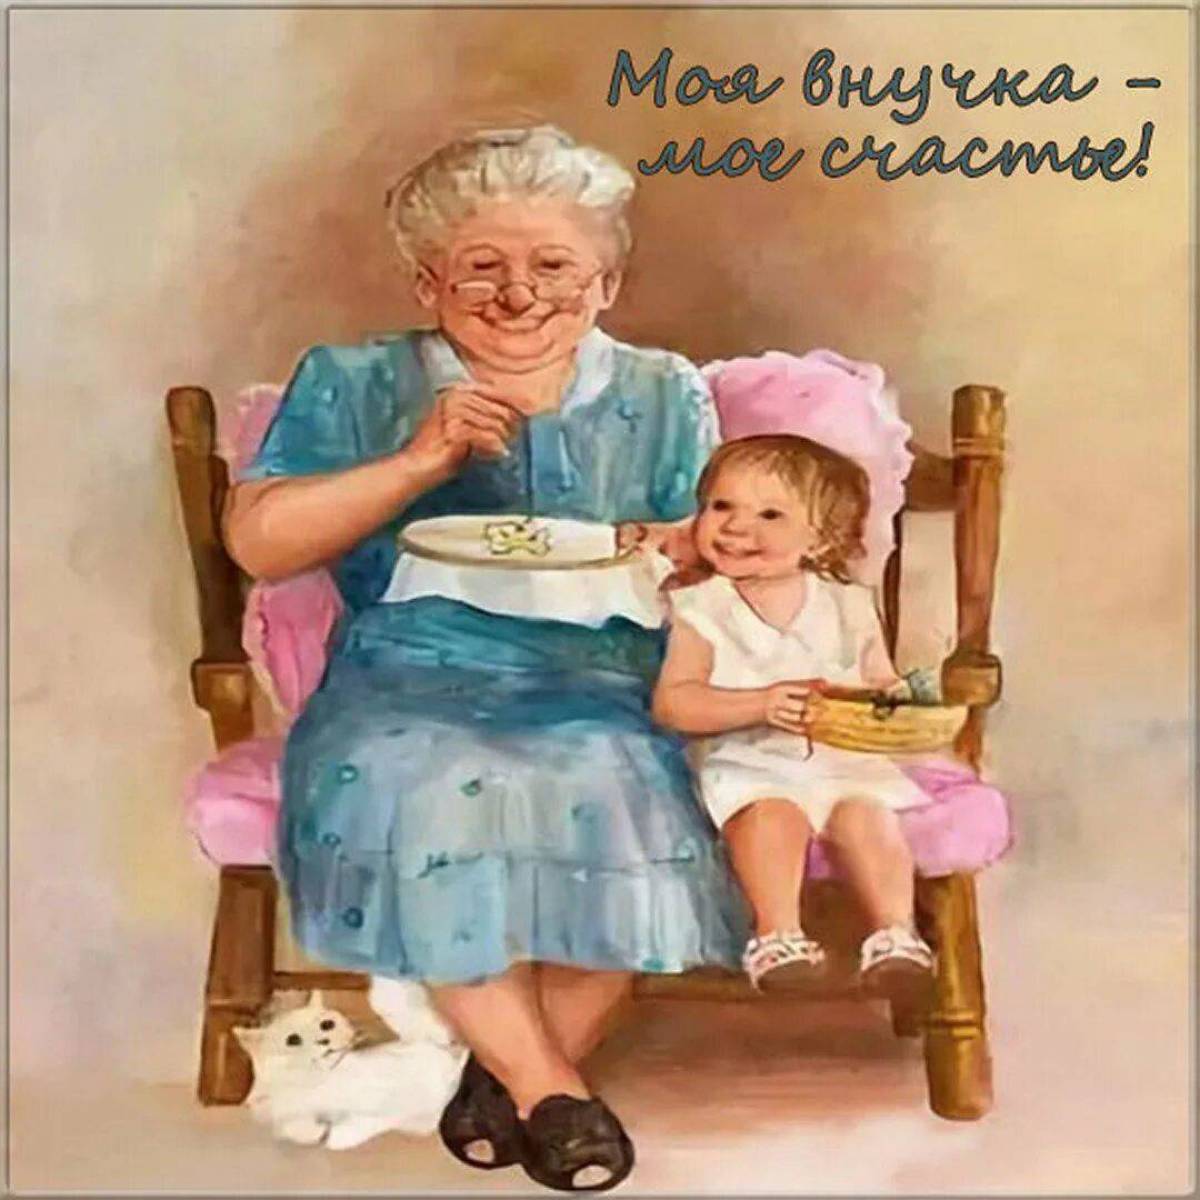 Картинка Бабушке С Днем Рождения Внука